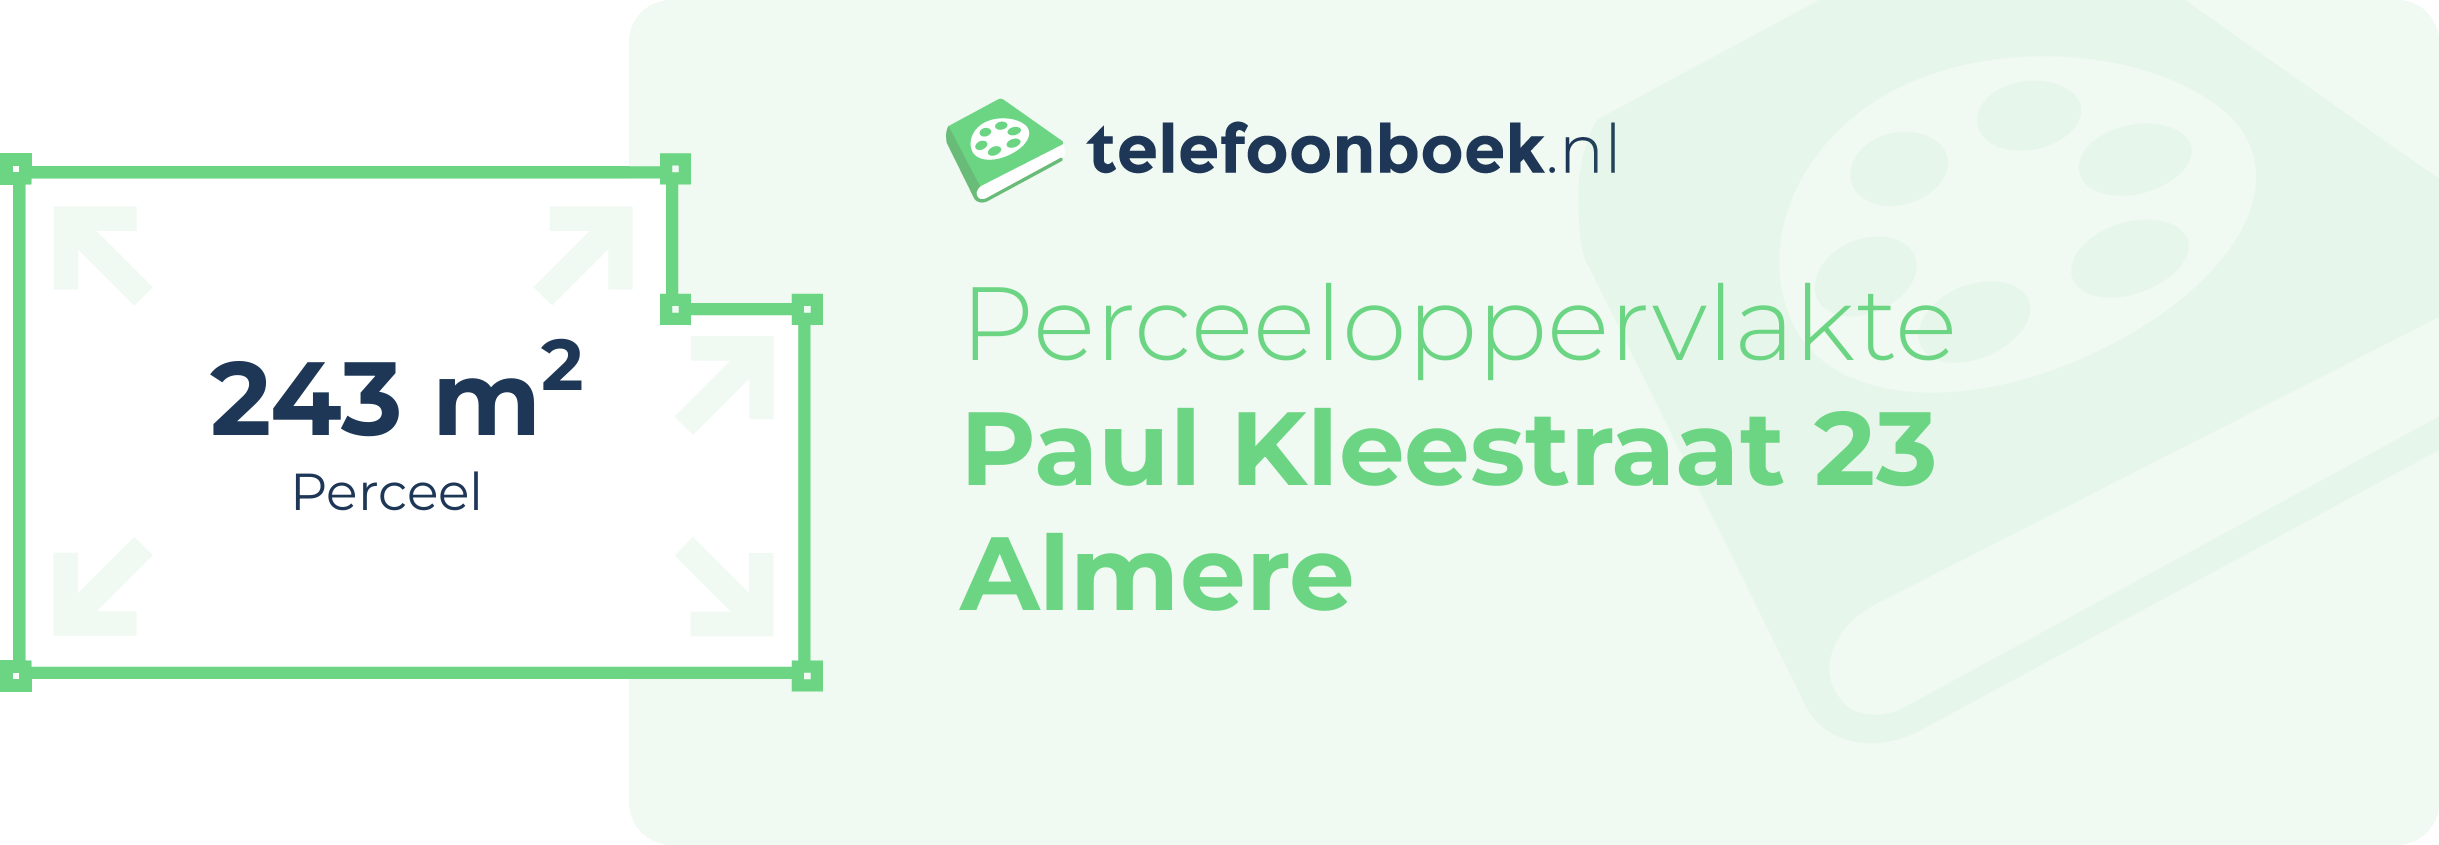 Perceeloppervlakte Paul Kleestraat 23 Almere